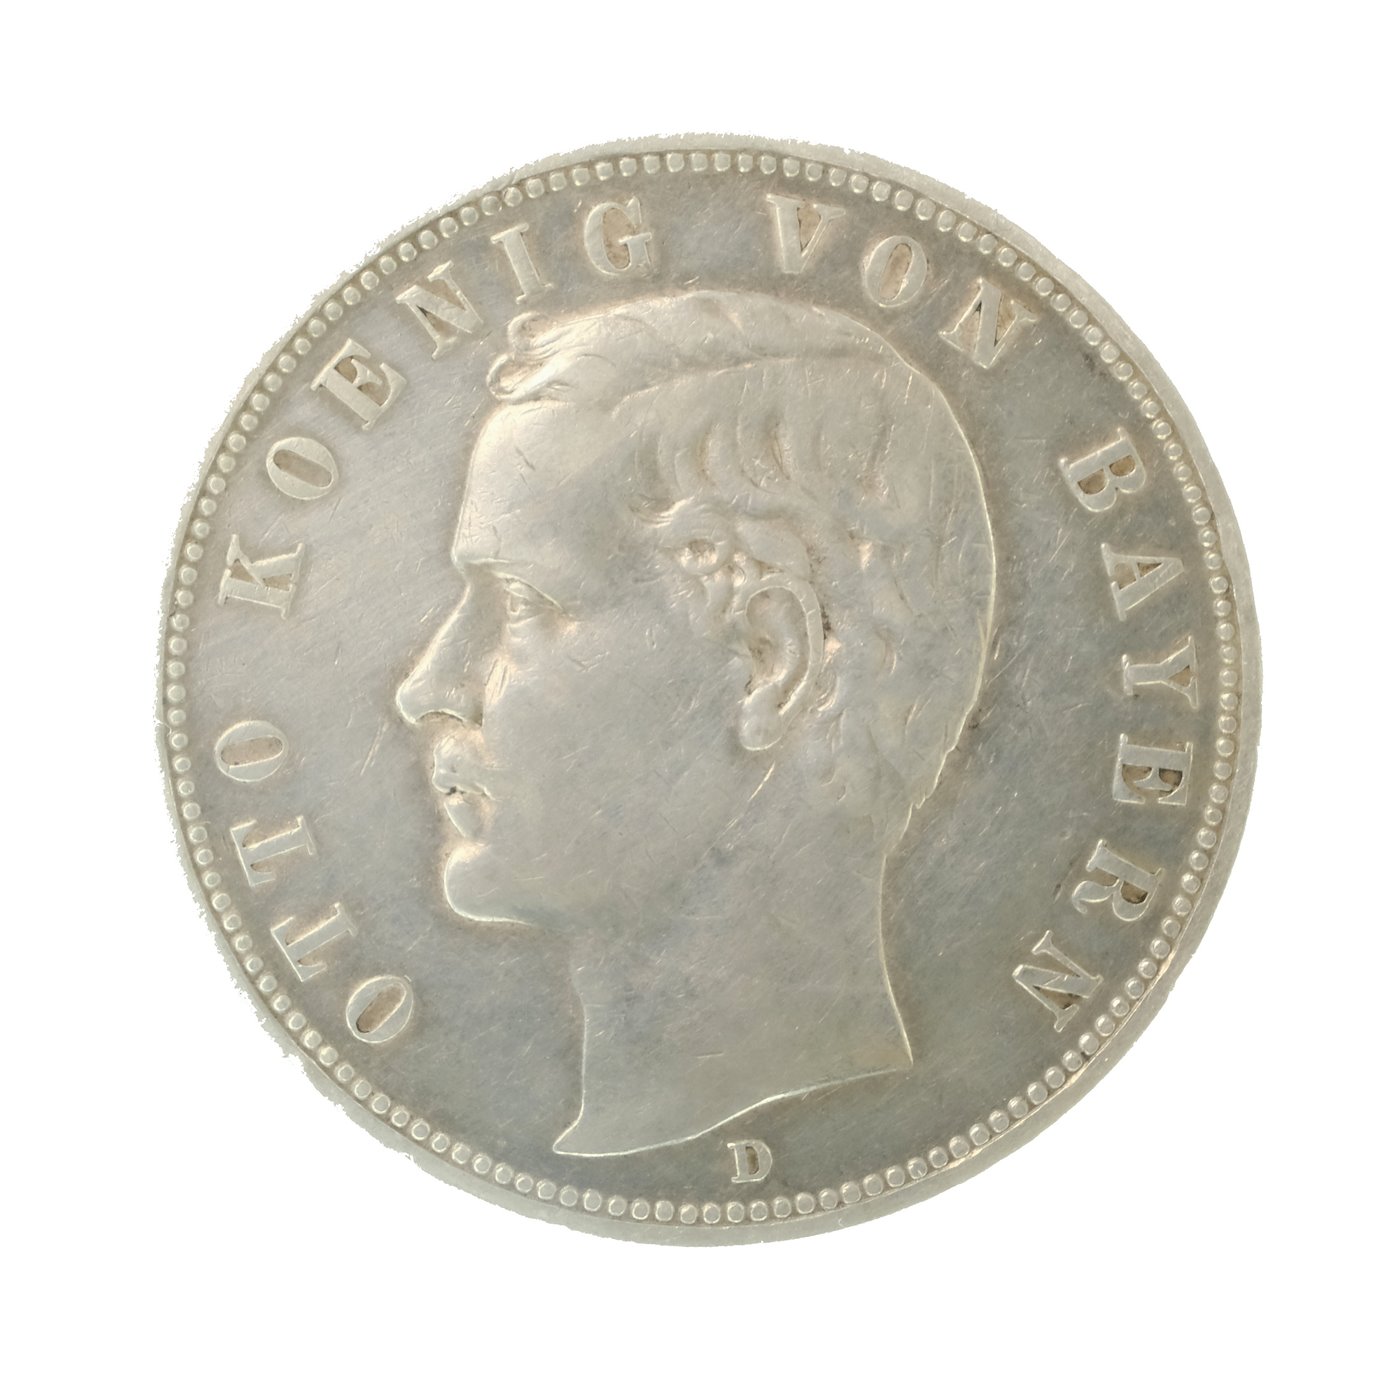 .. - Stříbrná 5 marka Prusko Wilhelm II. 1907 D J104, stříbro 900/1000, hmotnost hrubá 27,77 g